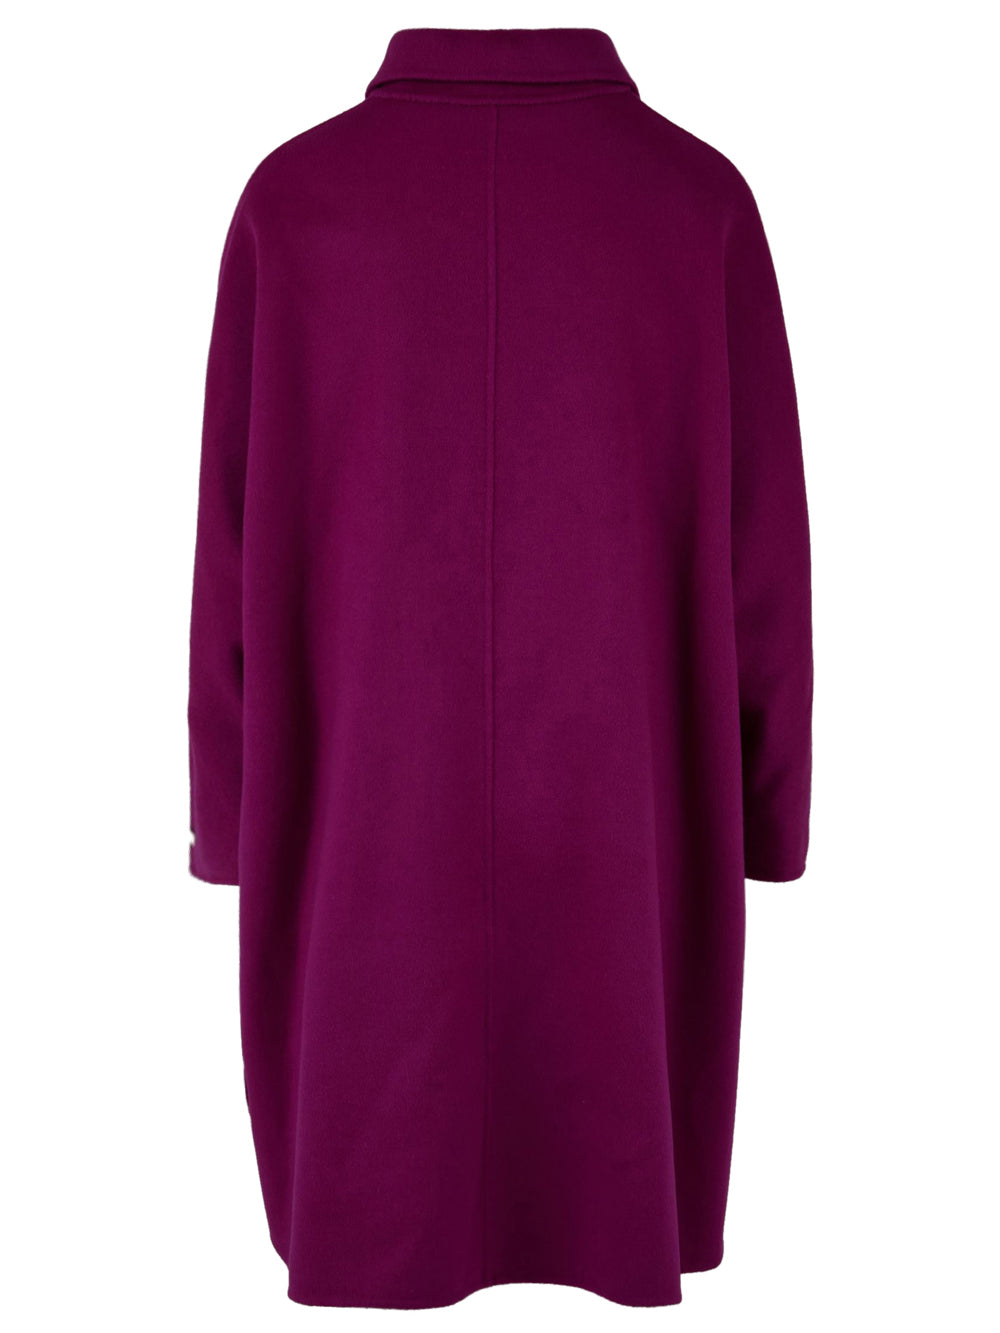 Cappotto lungo Donna in lana viola, Glox, retro